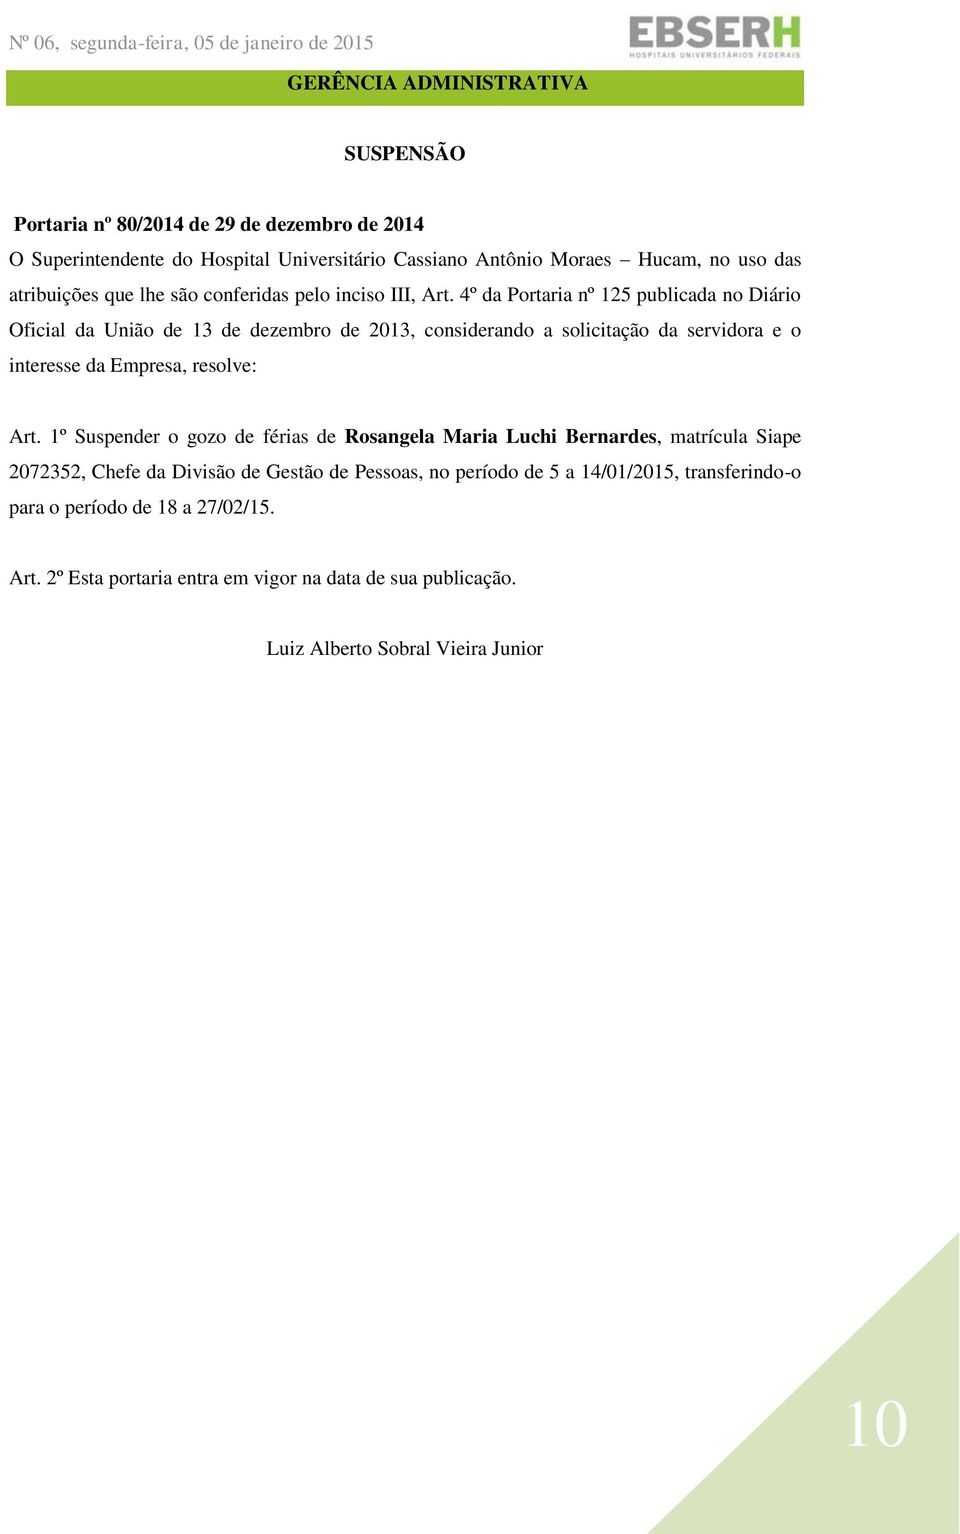 4º da Portaria nº 125 publicada no Diário Oficial da União de 13 de dezembro de 2013, considerando a solicitação da servidora e o interesse da Empresa, resolve: Art.